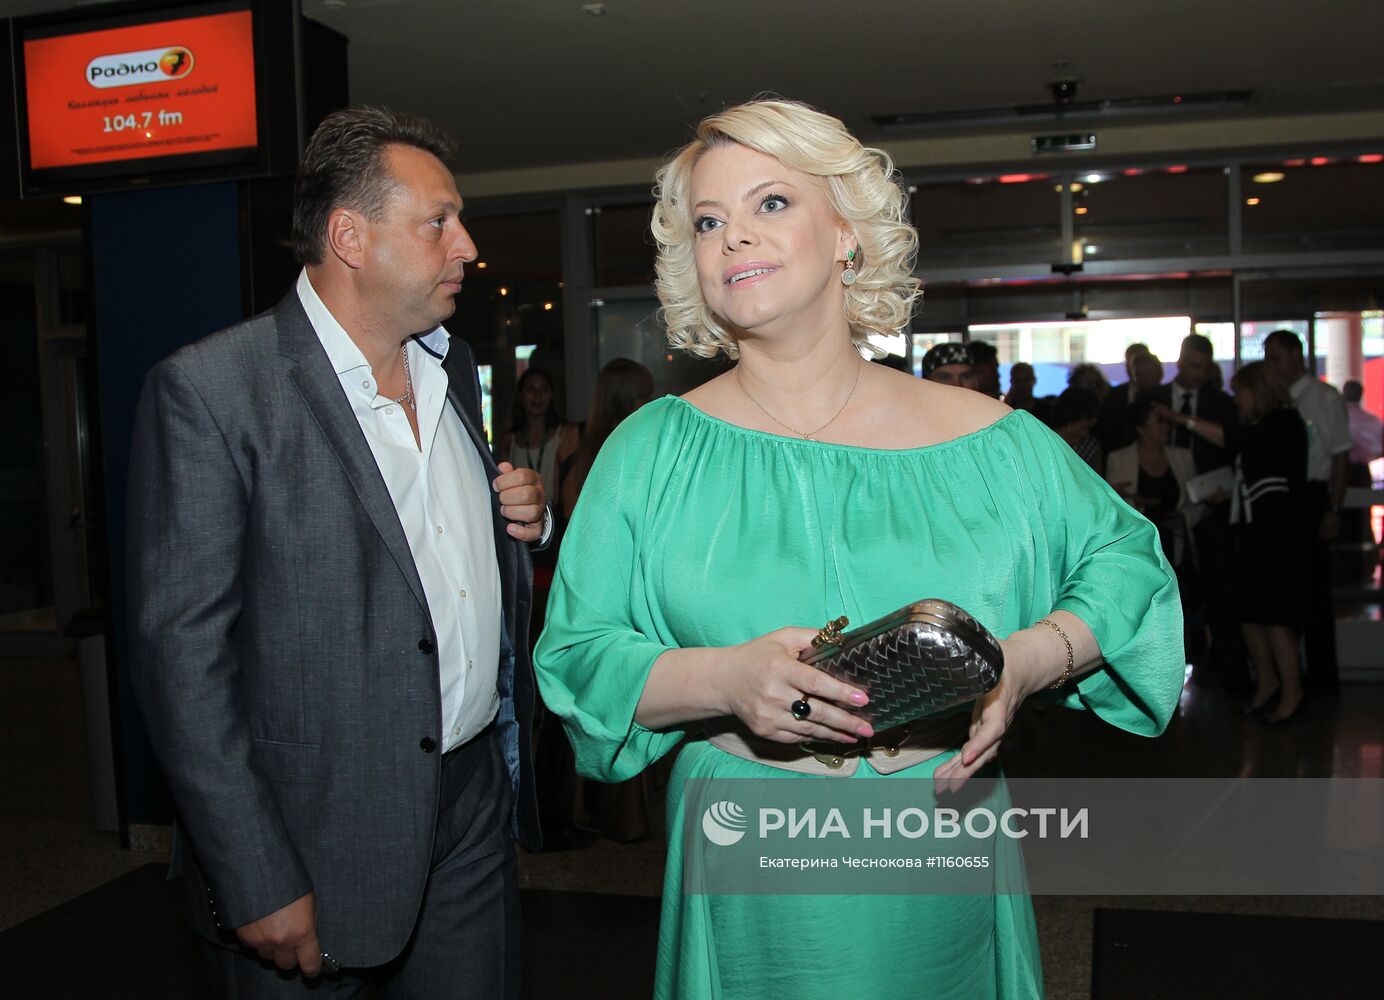 Церемония открытия Московского Международного кинофестиваля